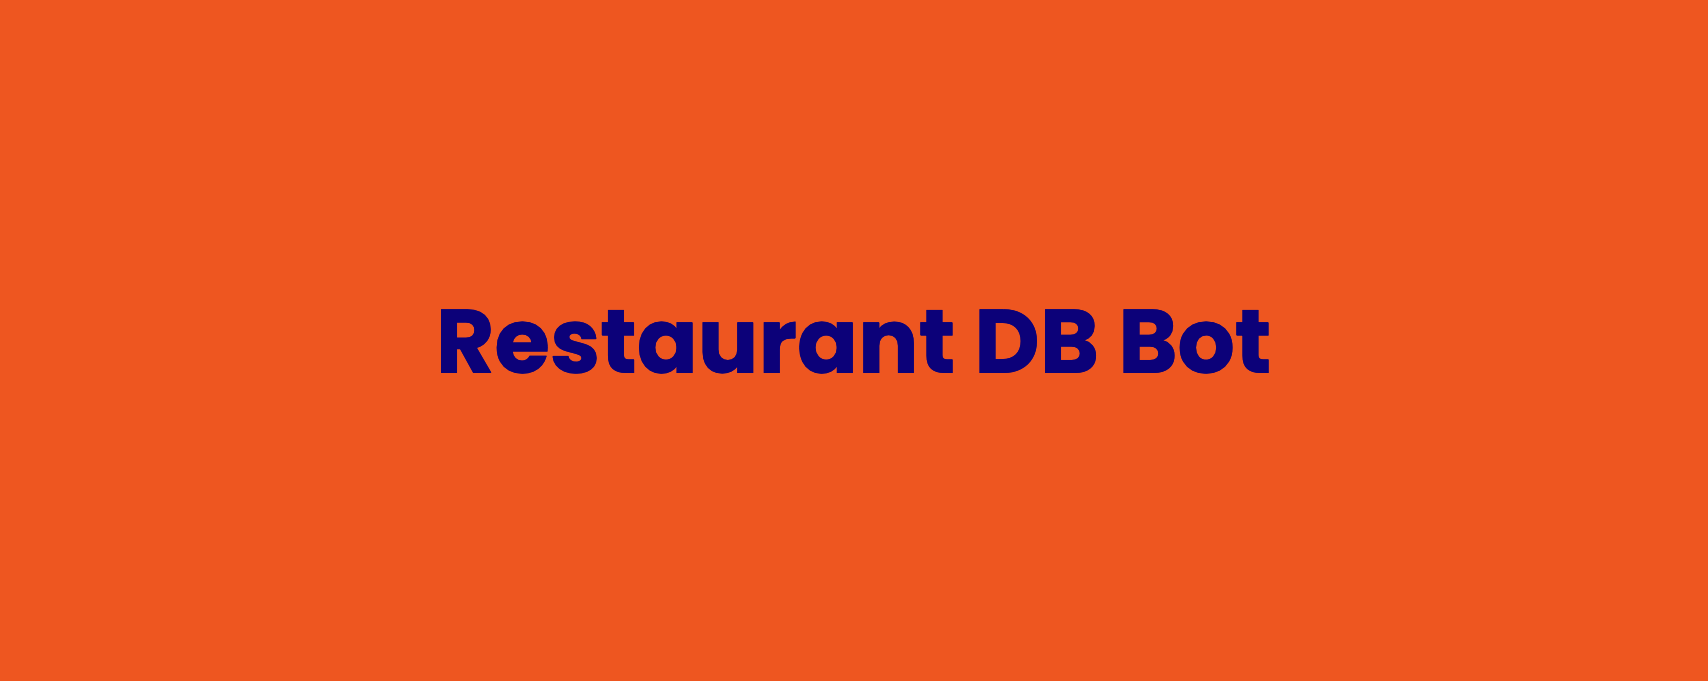 Restaurant DB bot banner